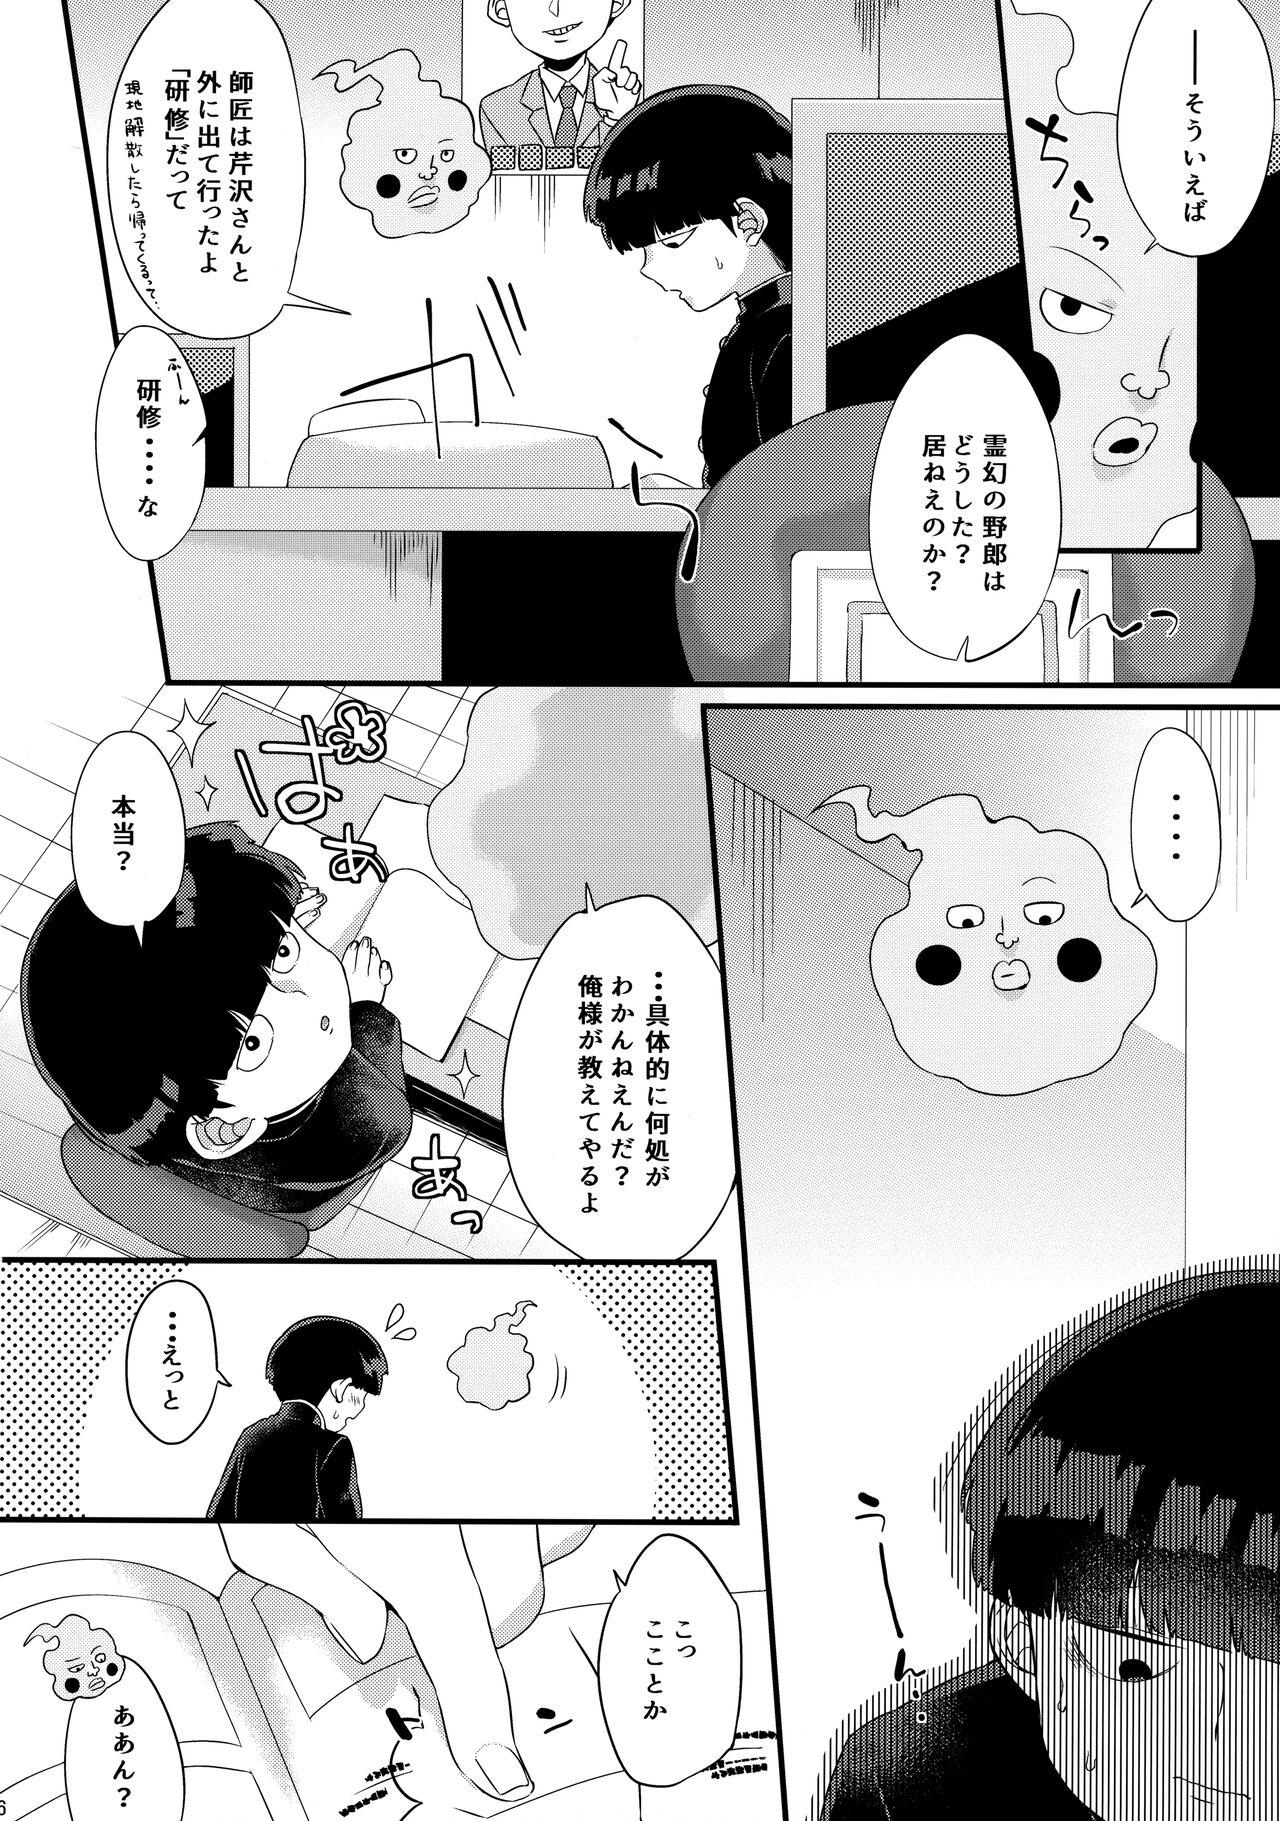 Solo Female Boku ni wa, Sensei ga Futari Iru - Mob psycho 100 Bbw - Page 7